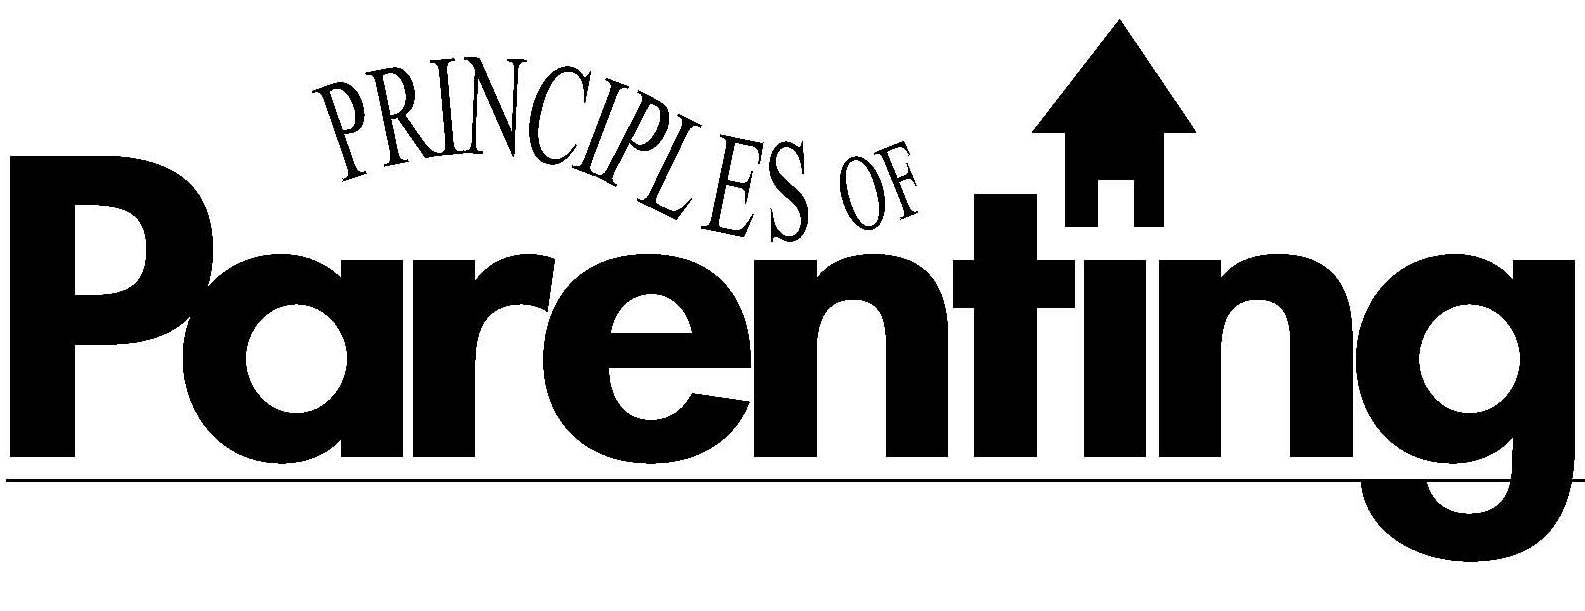 Principles of Parenting logo